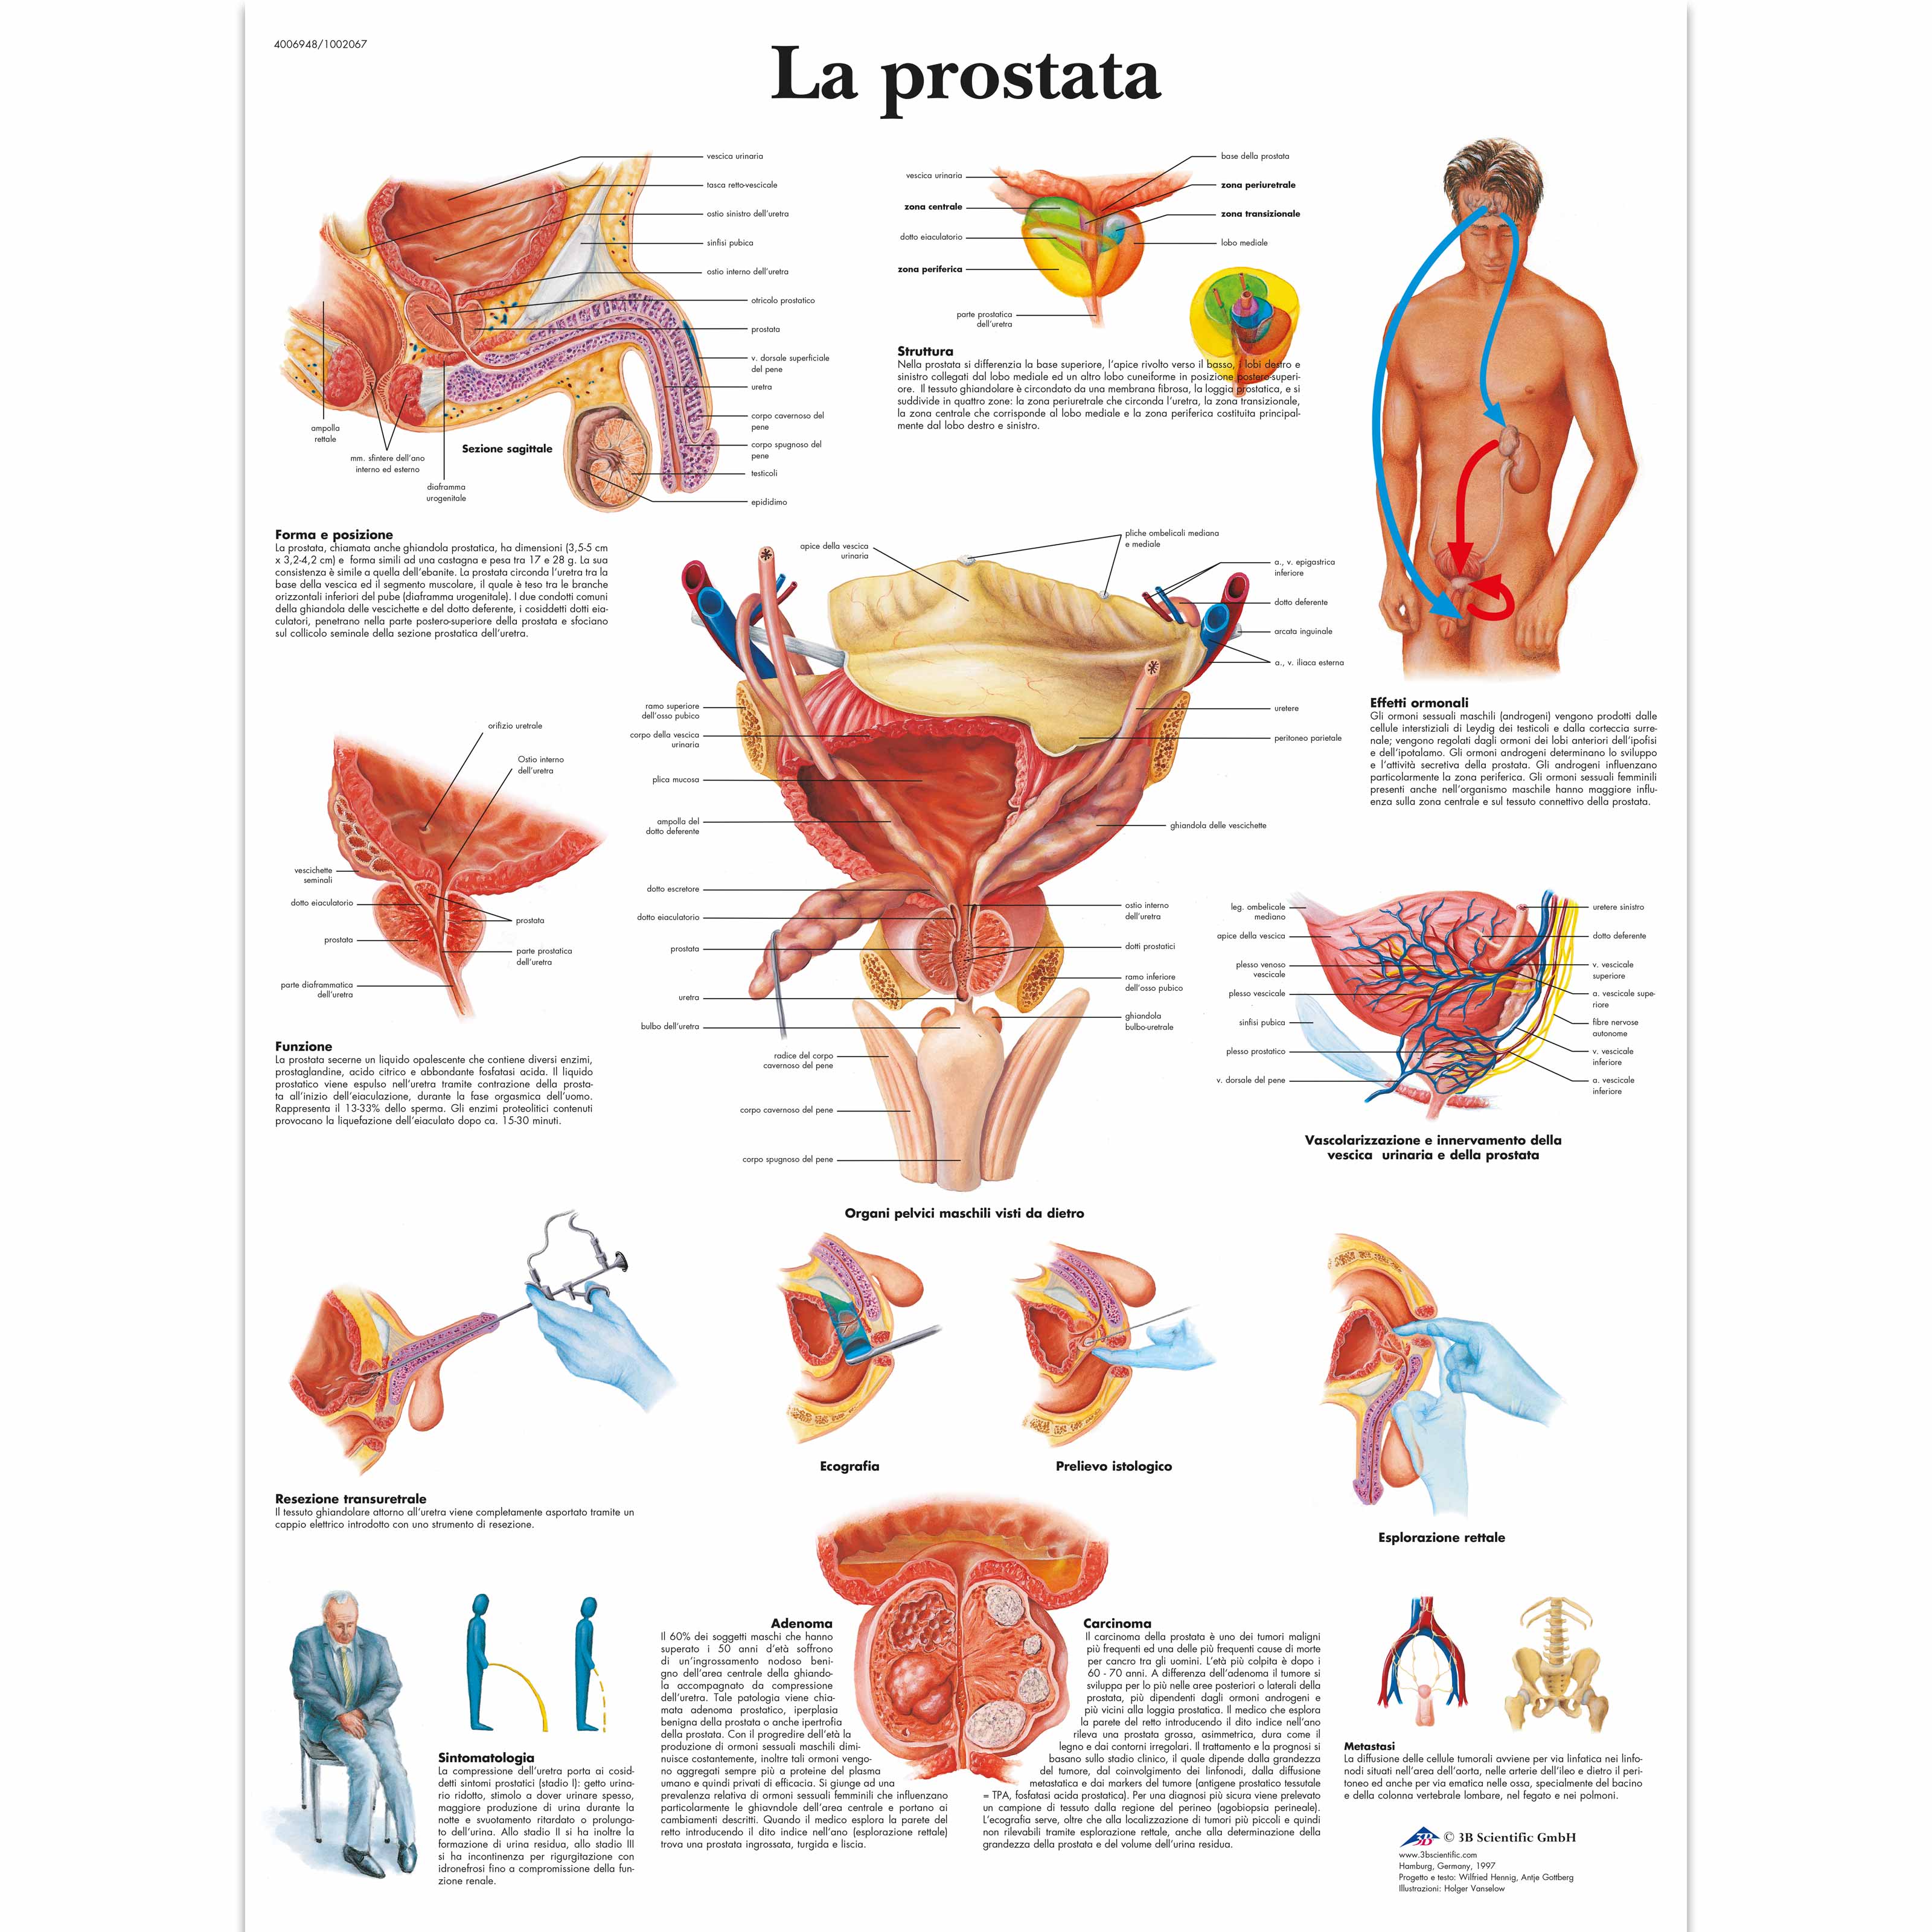 Cancer de prostata sintomas iniciales. Que es cancer de prostata sintomas